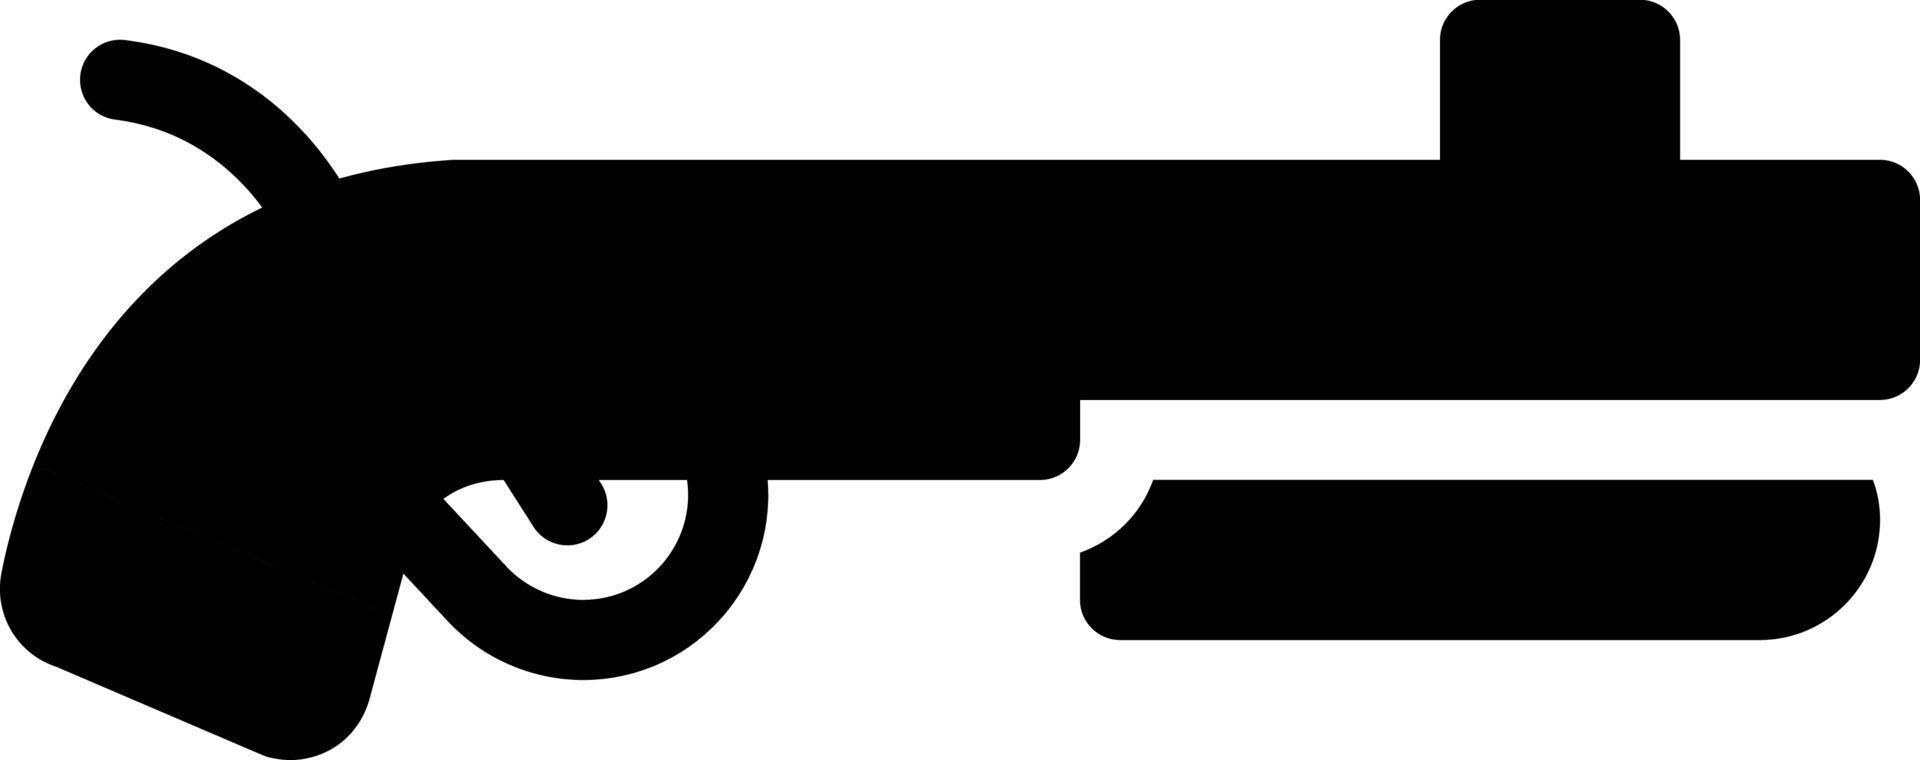 ak47 pistola vector ilustración en un fondo.premium calidad simbolos.vector íconos para concepto y gráfico diseño.